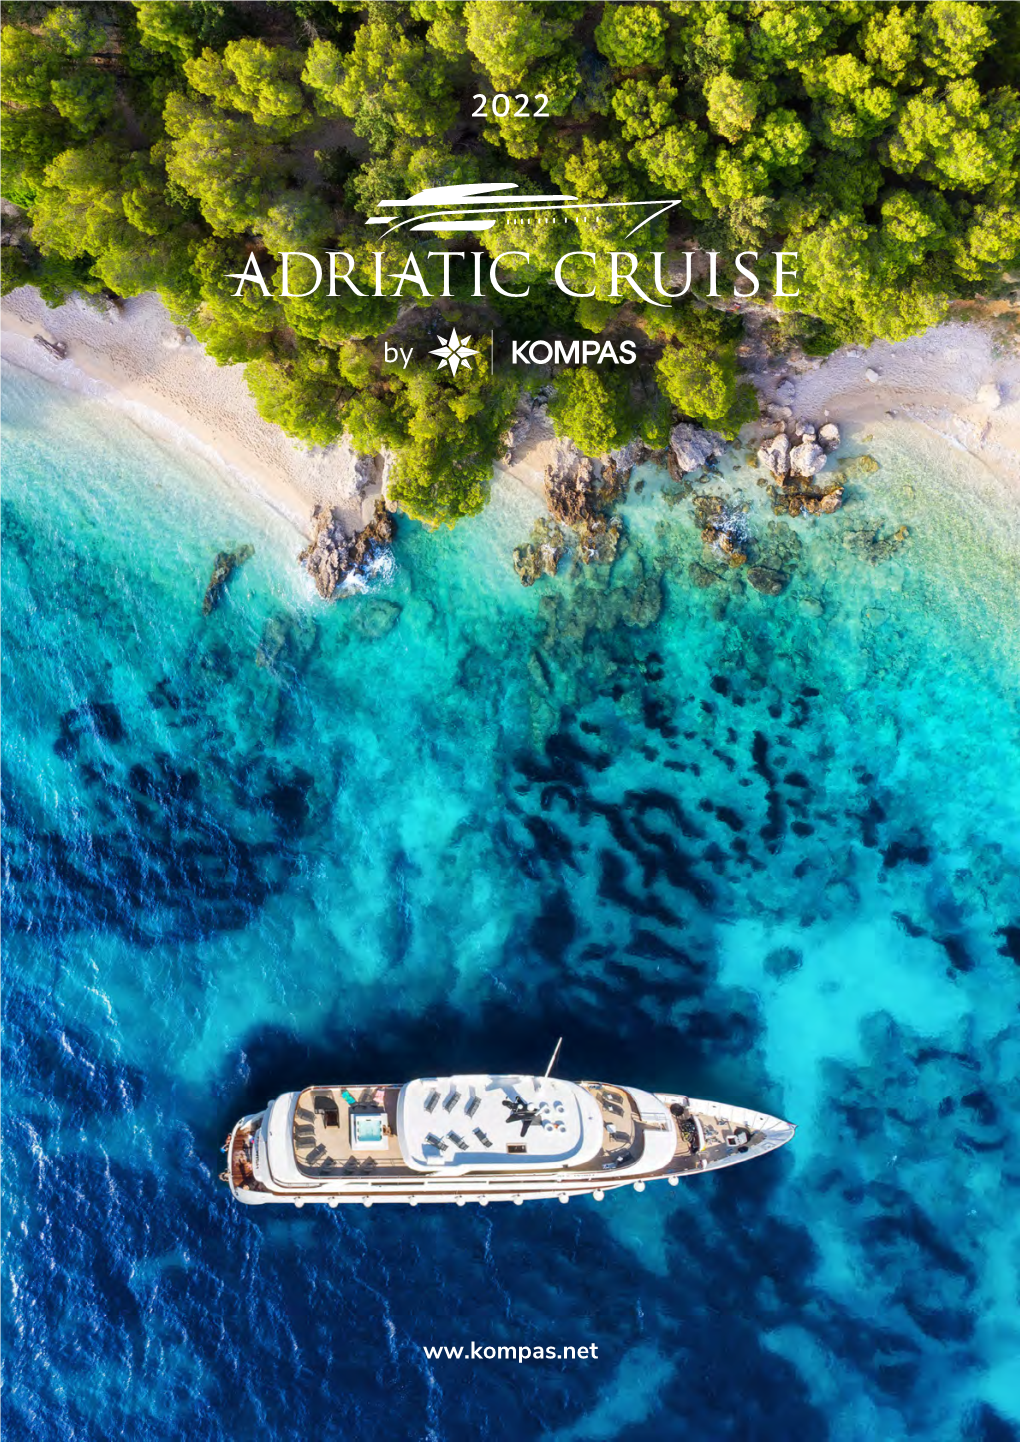 Adriatic Cruises 2021